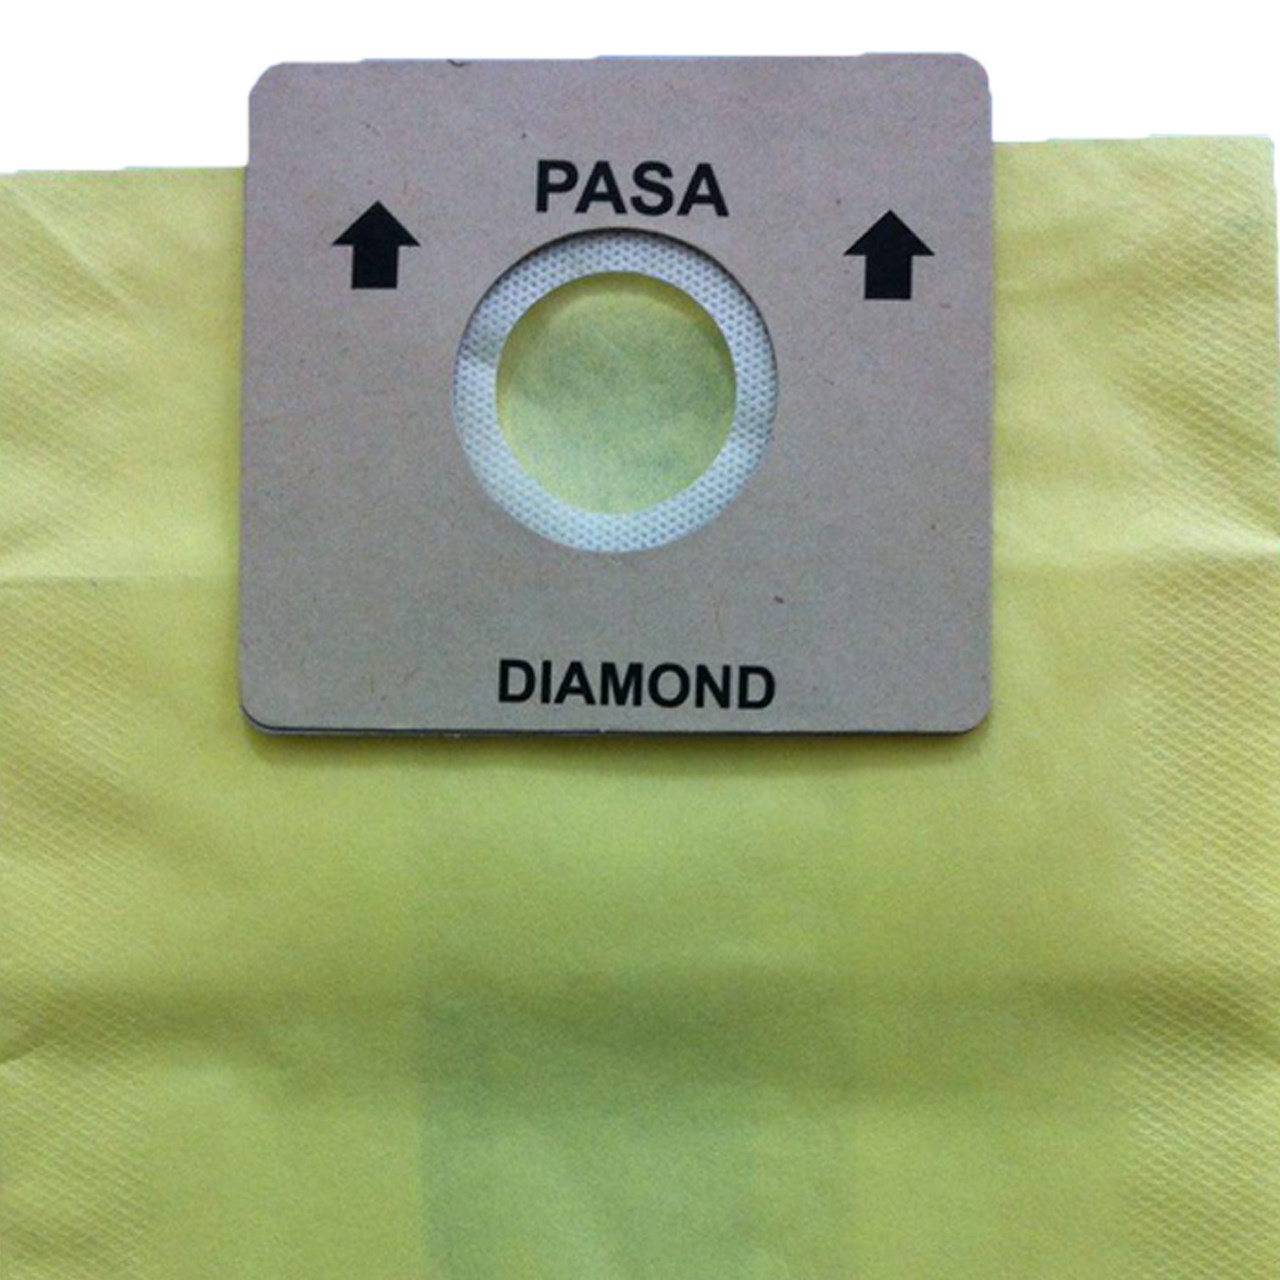 خرید                     کیسه جاروبرقی  مدل پاسا و دیاموند بسته 5 عددی